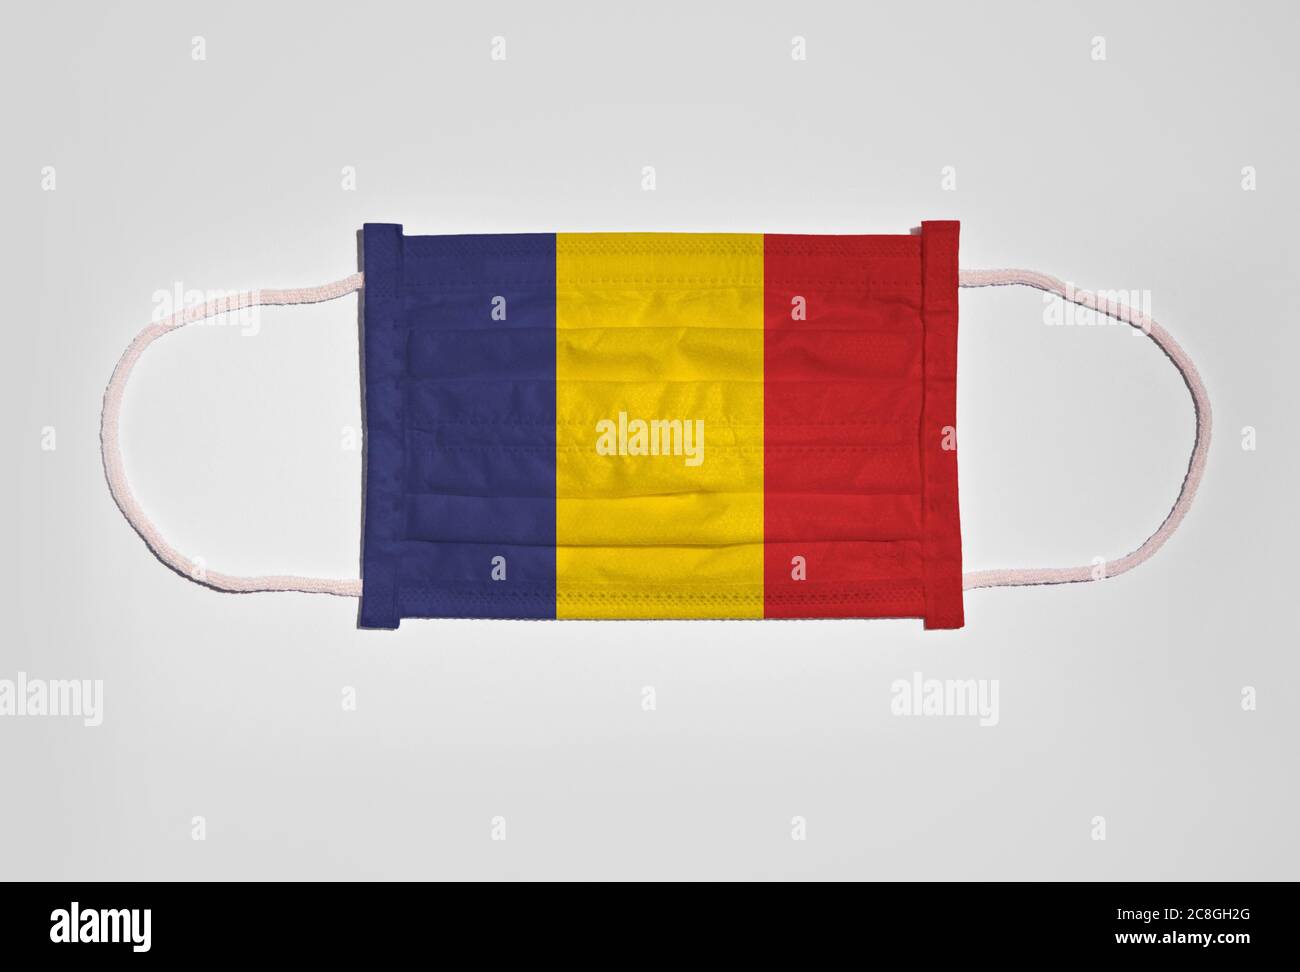 Symbolbild Corona Krise, Mundschutz, Atemmaske, Mund- und Nasenschutz mit Flagge Rumäniens, weißer Hintergrund Stockfoto